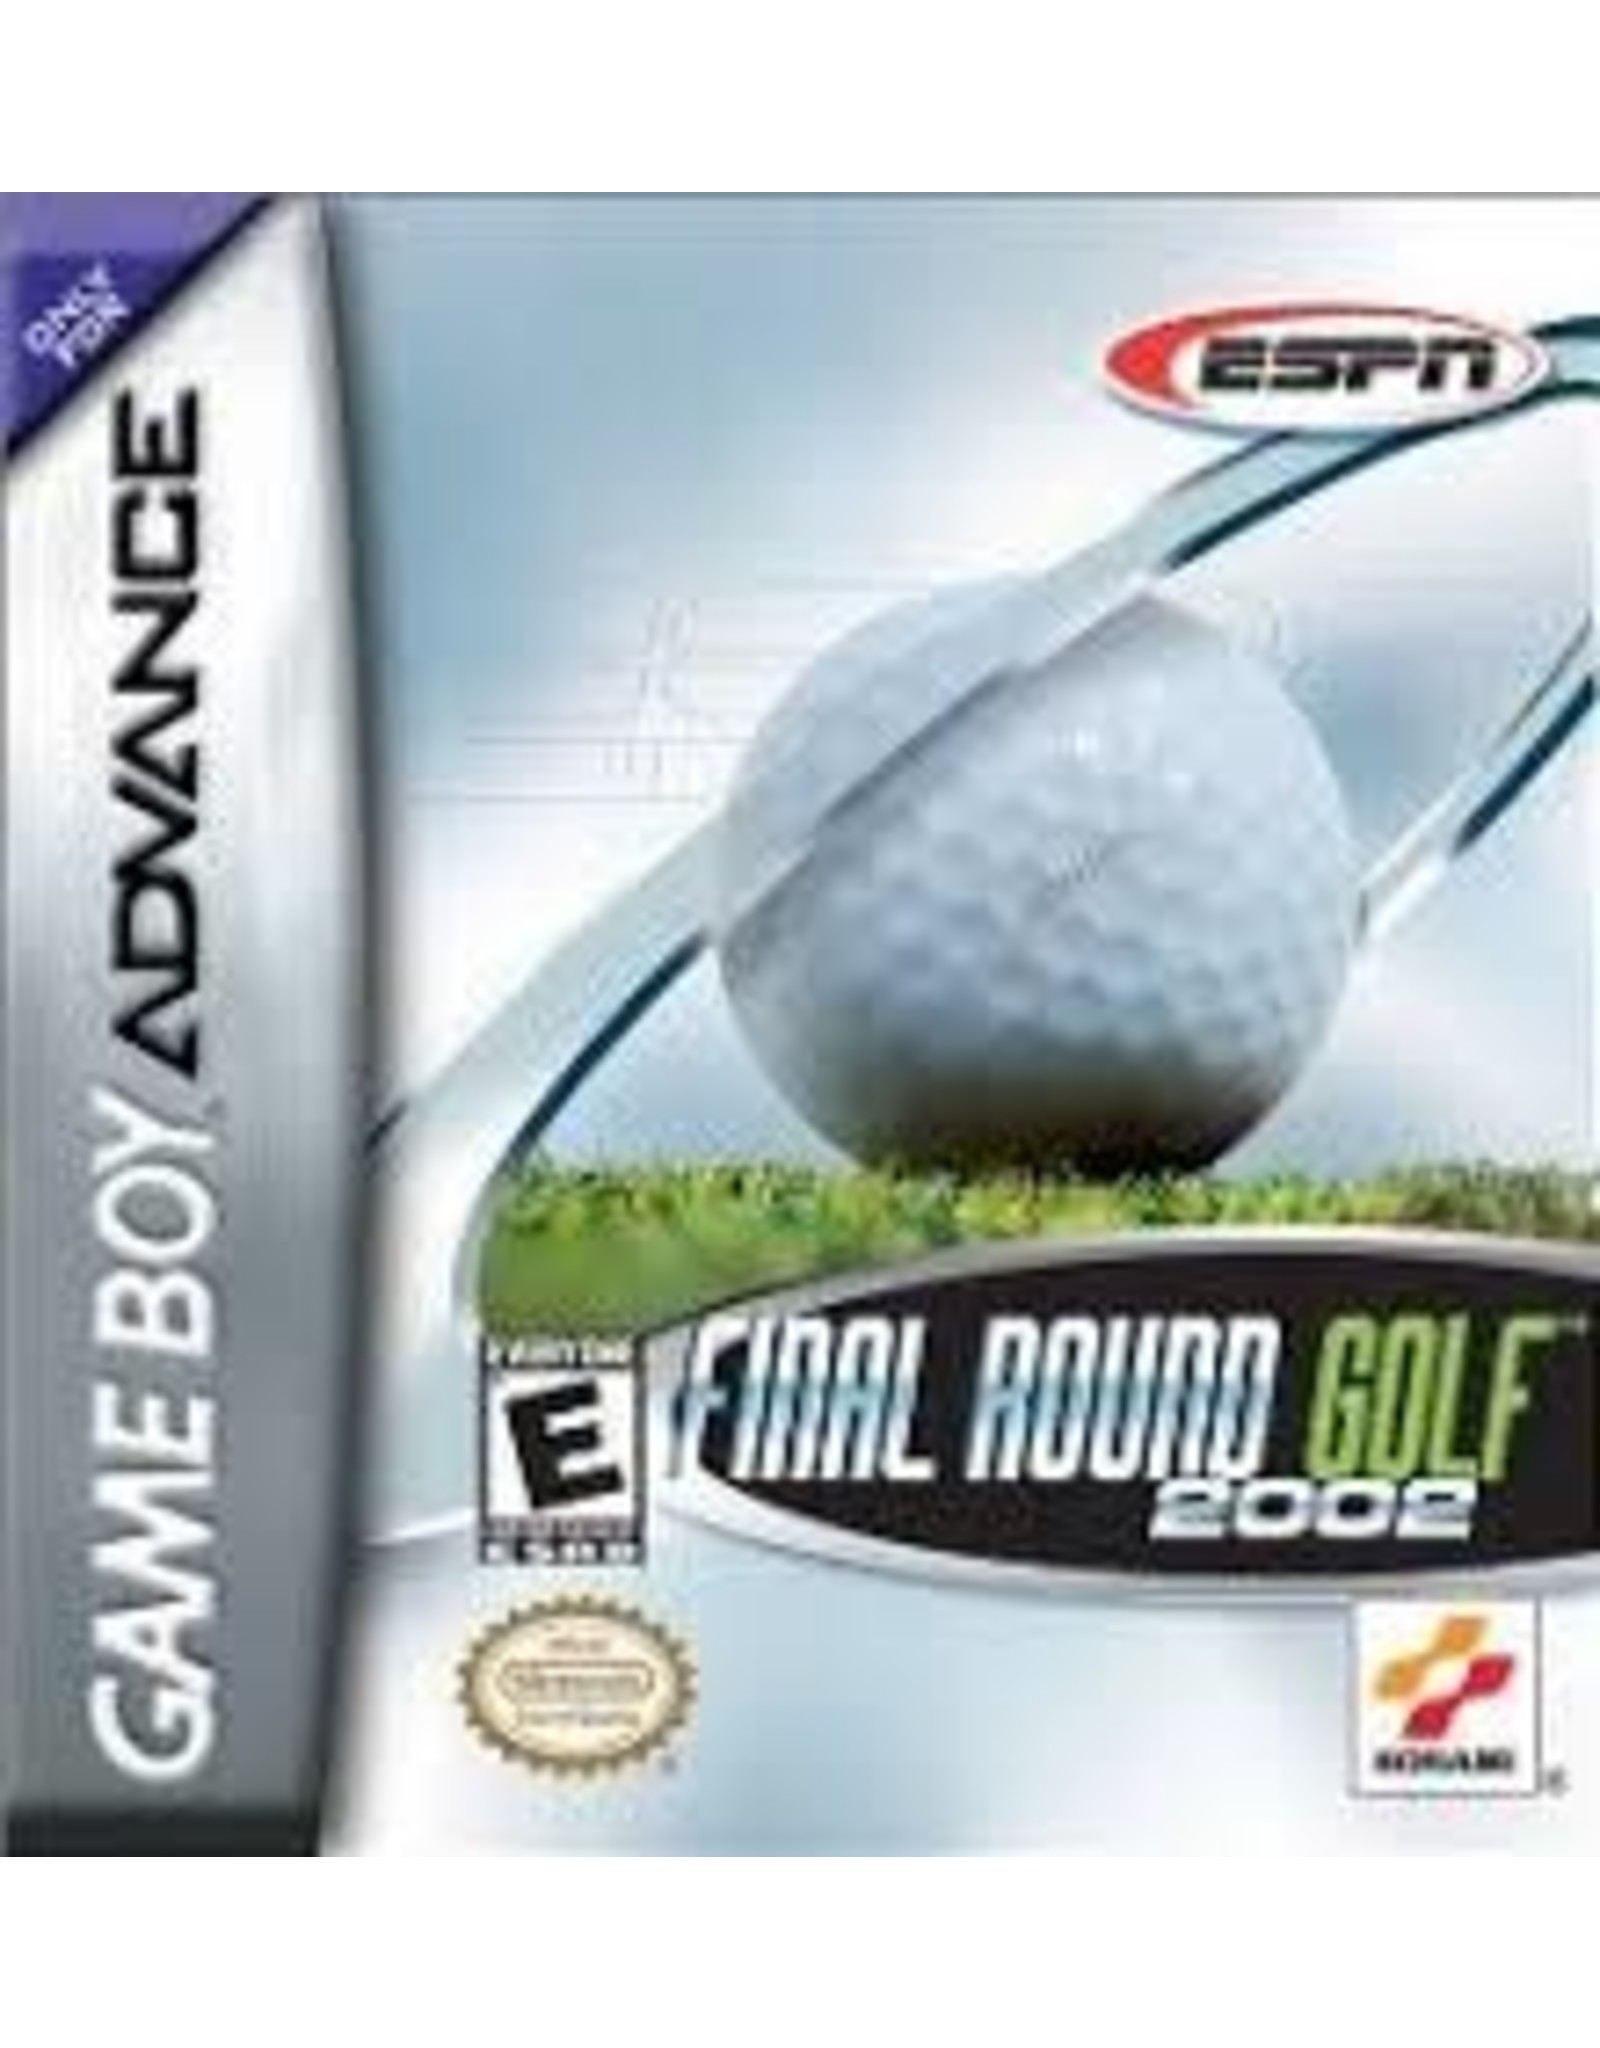 Game Boy Advance Final Round Golf 2002 (Cart Only)